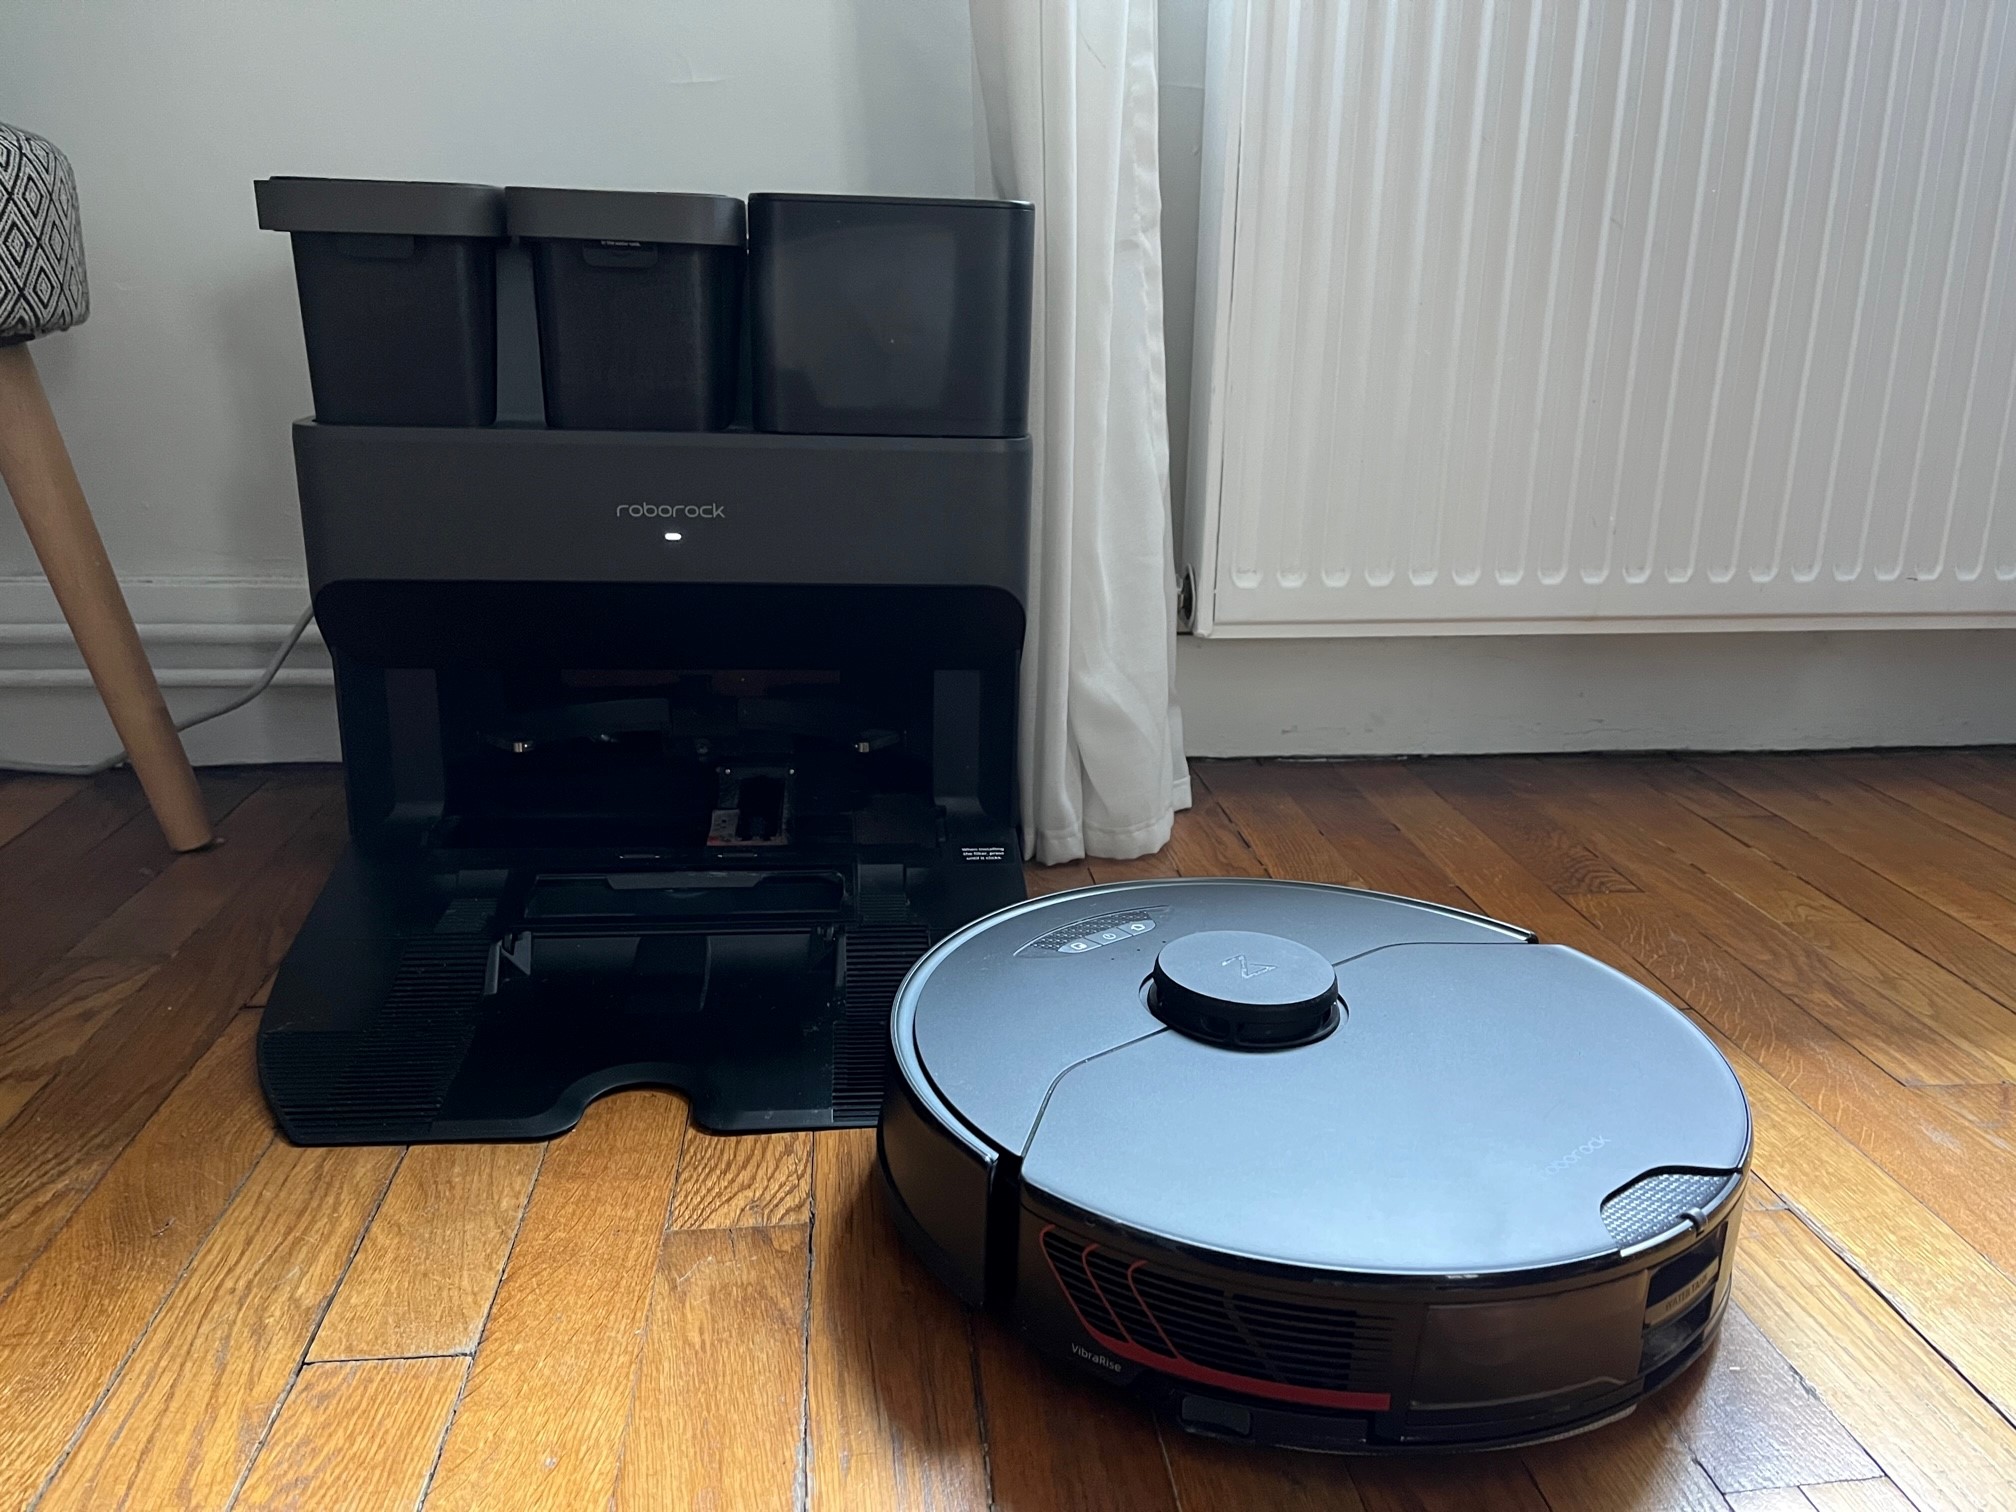 Boulanger fracasse le prix de cet aspirateur laveur iRobot Roomba pour le  black friday - Le Parisien